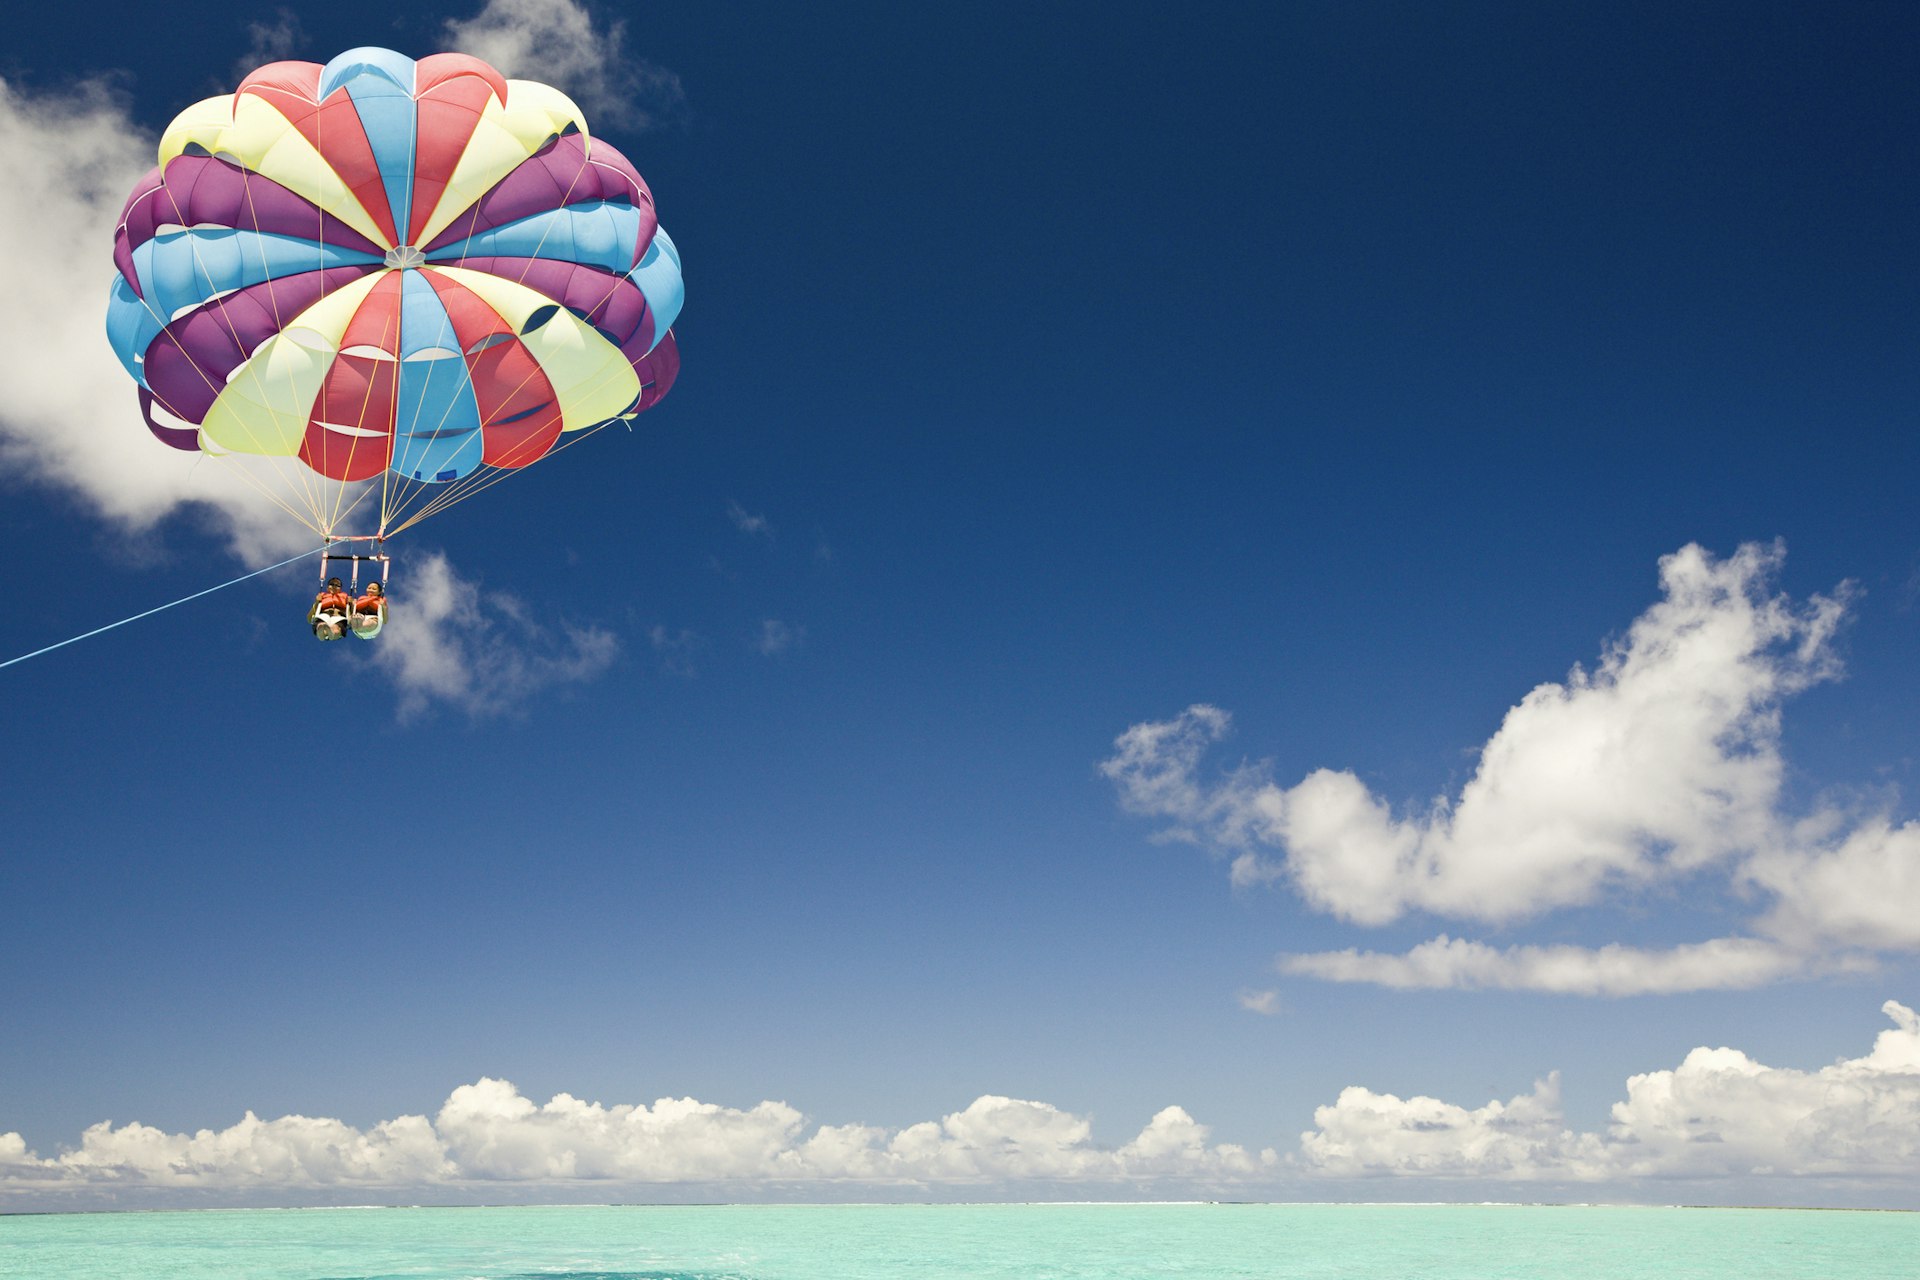 A couple parasailing beneath a colorful parachute in Bora Bora